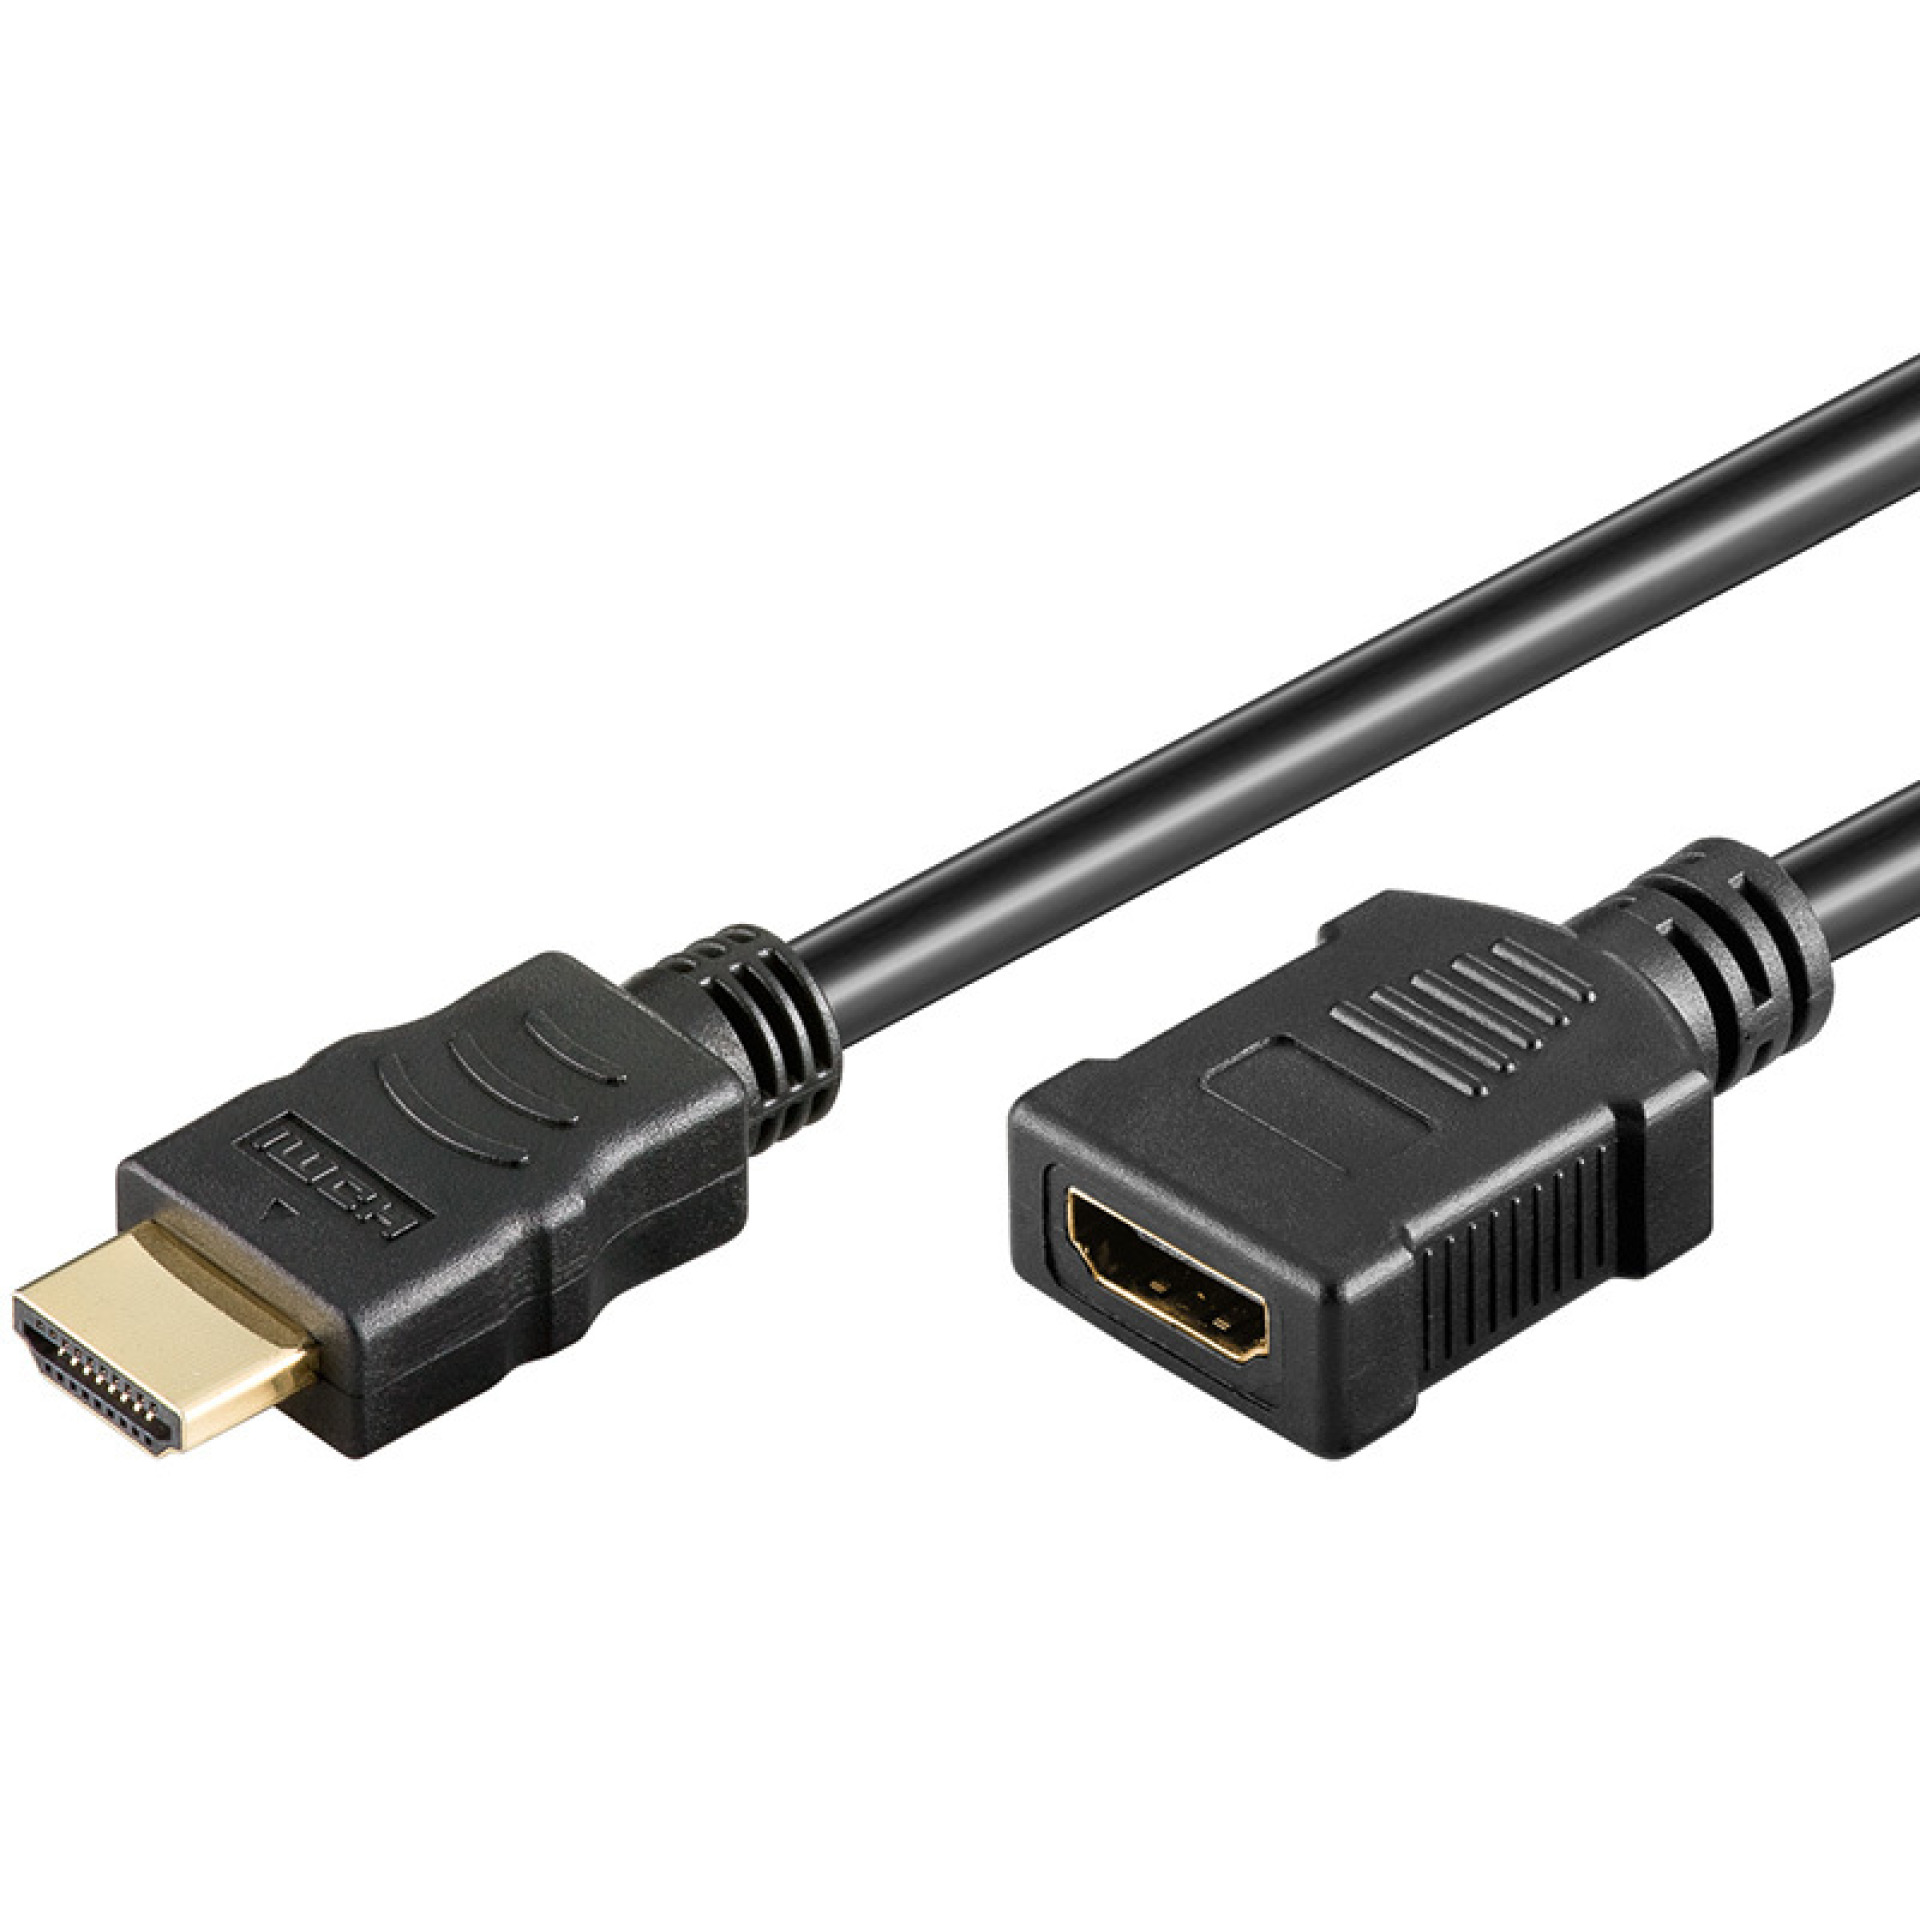 HDMI High Speed Verlängerungskabel mit Ethernet Stecker/Buchse, schwarz, 1,8 m